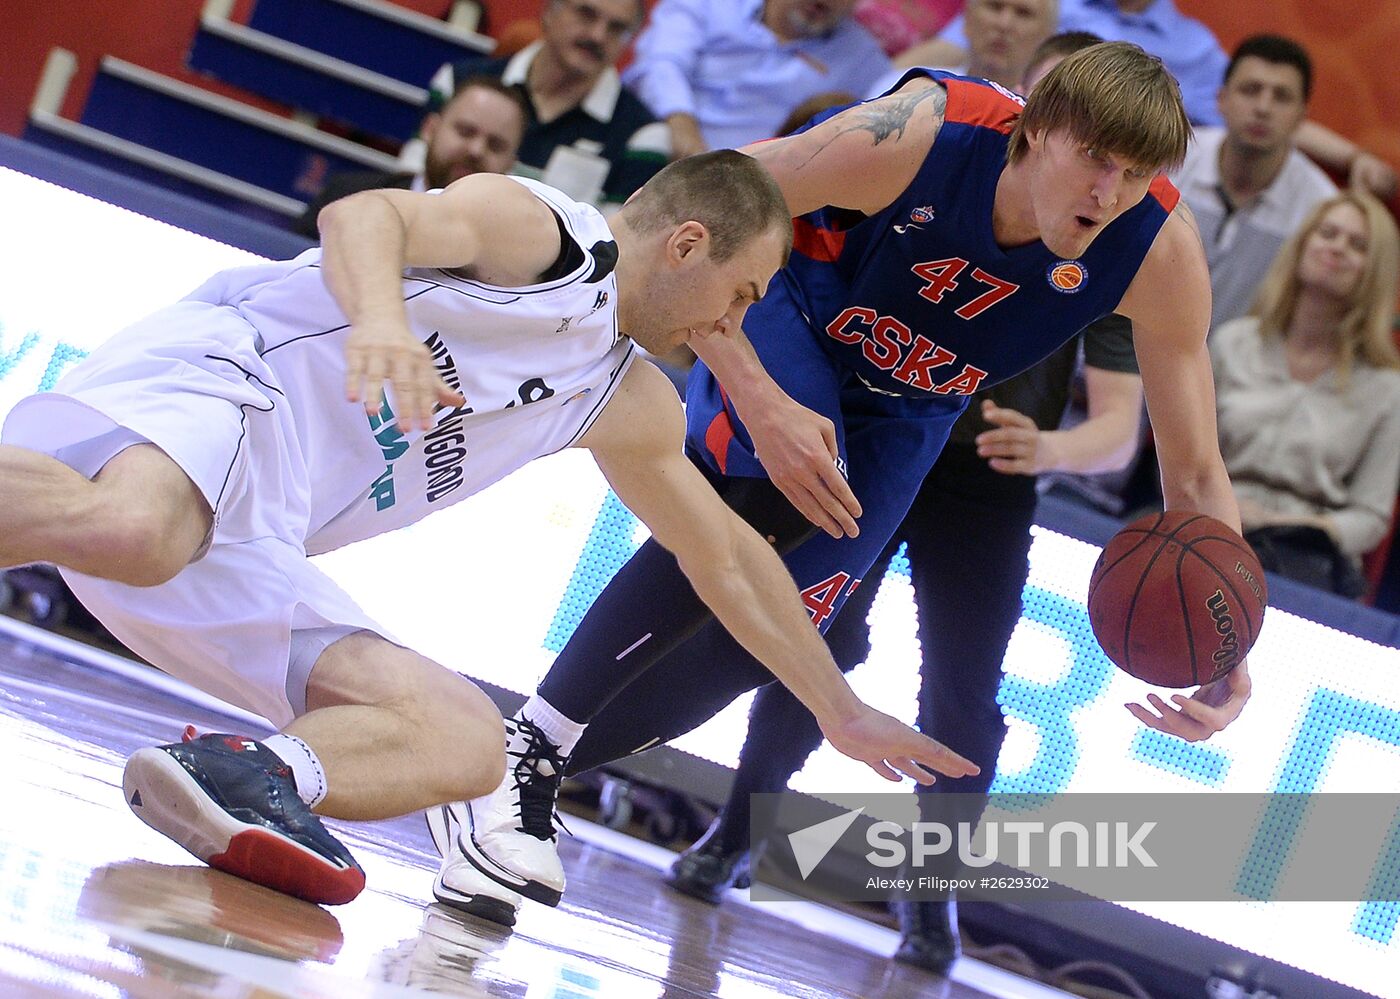 Basketball. VTB United League. CSKA vs. Nizhny Novgorod